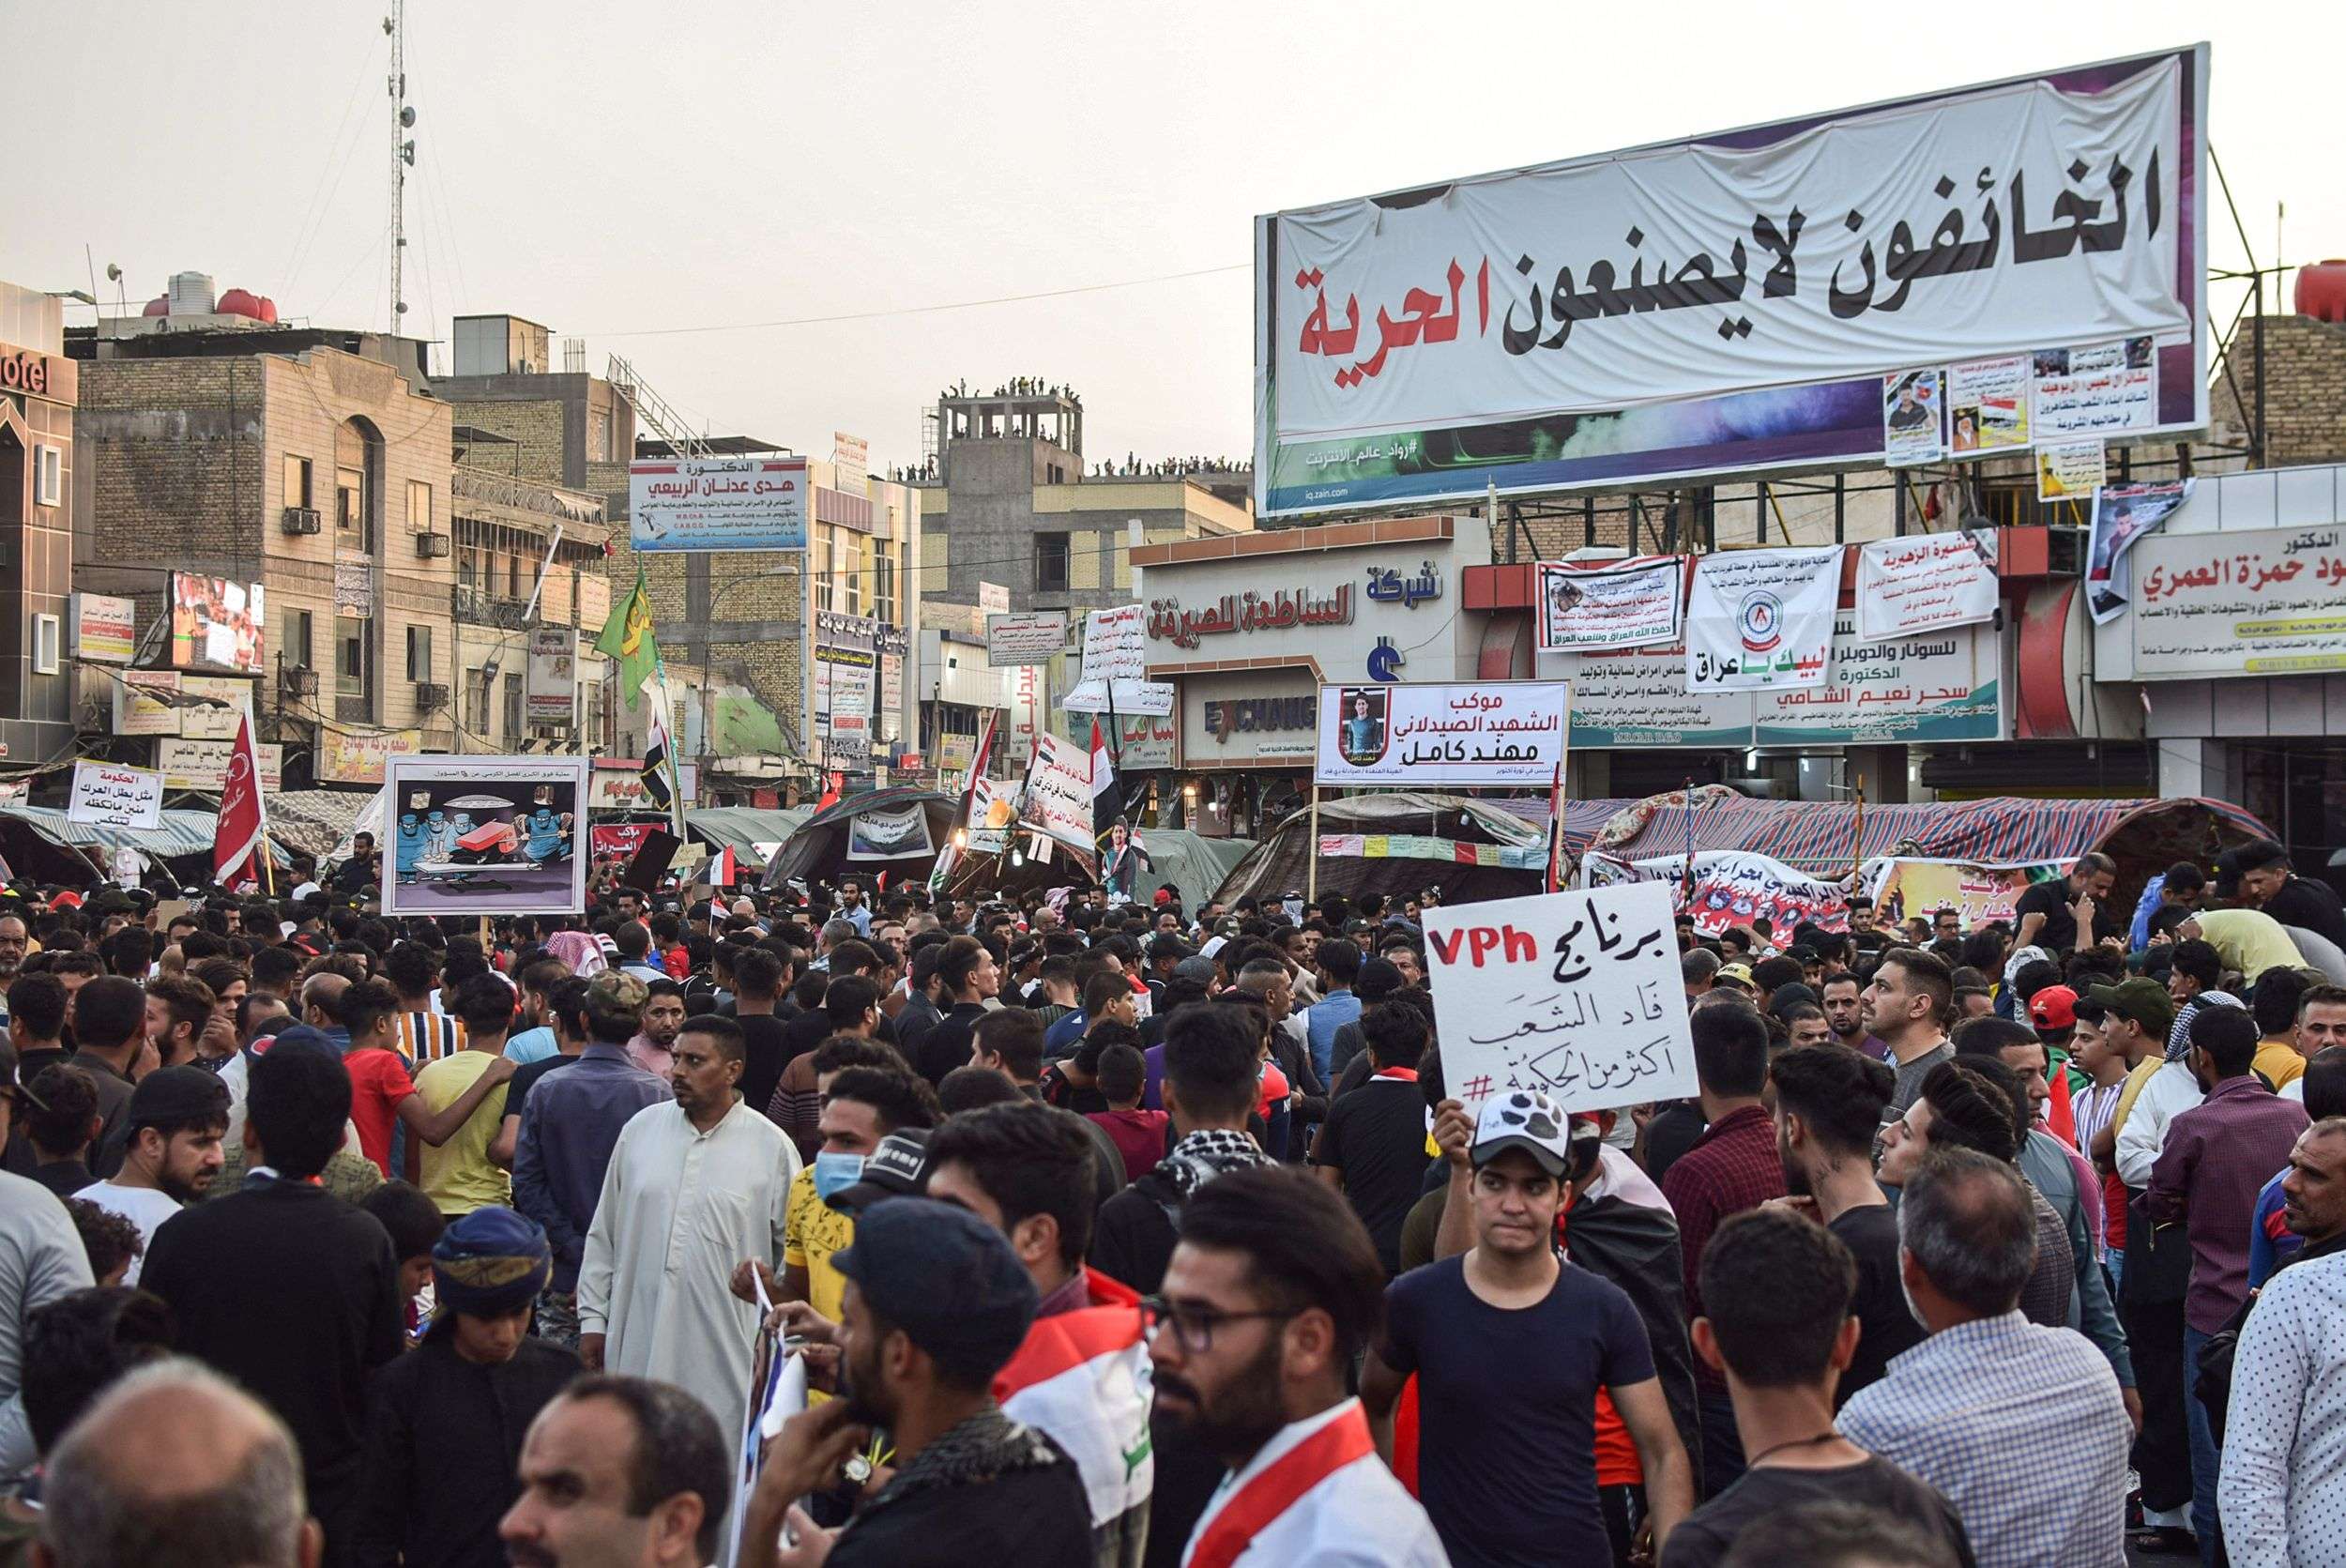 احتجاجات العراق أربكت الحسابات الايرانية